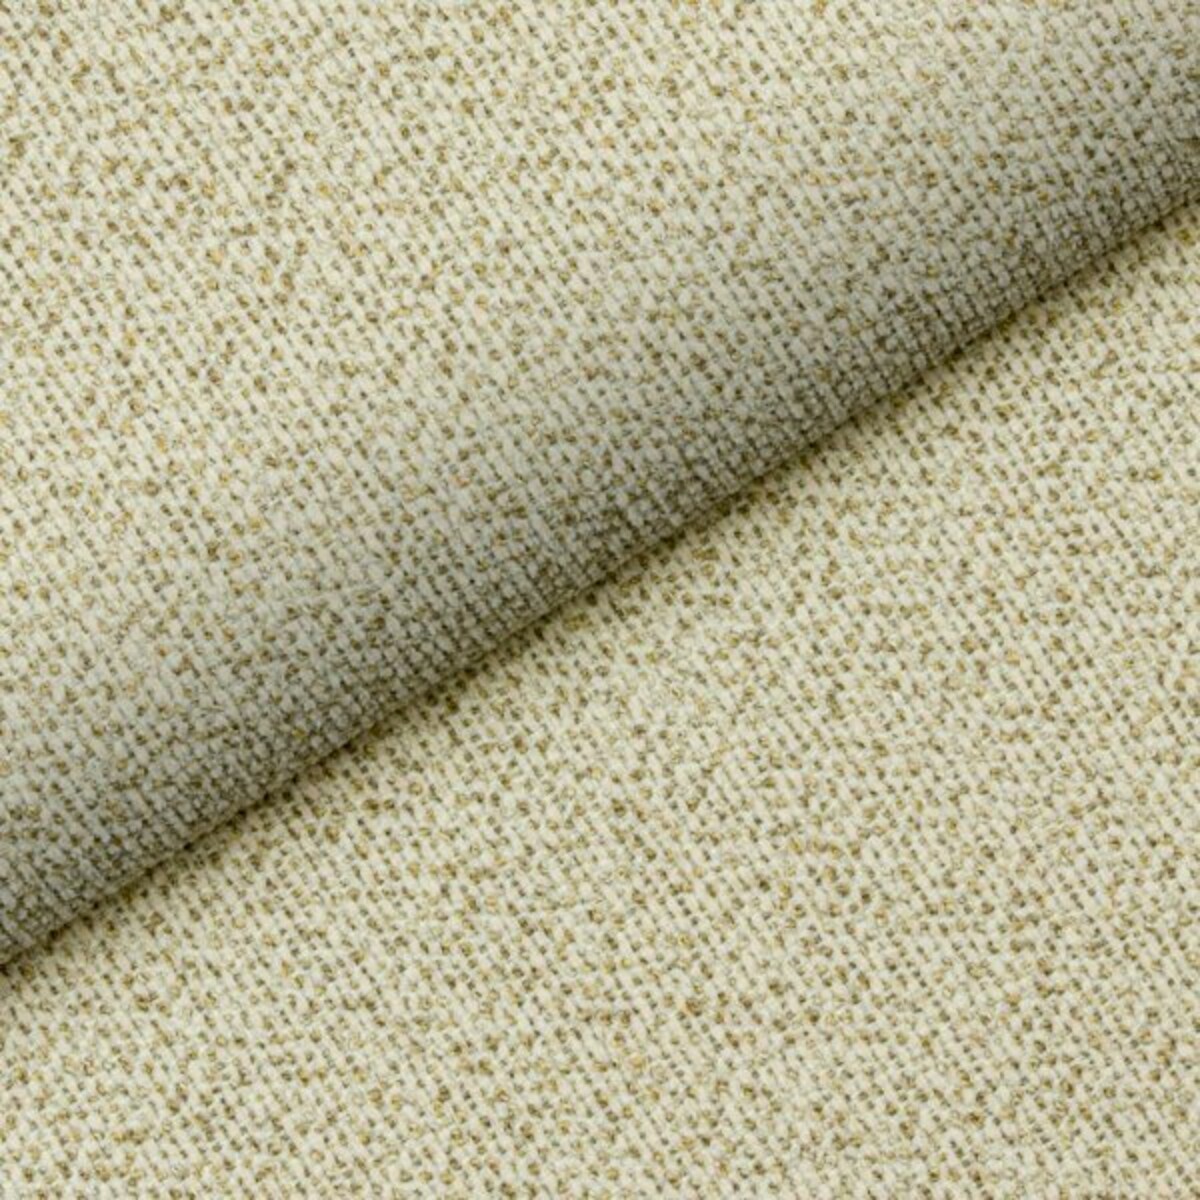 Łatwy w utrzymaniu materiał Bloom 06 Fargotex w kolorze piaskowym. Interesująca faktura i gruby splot to jego główne zalety.